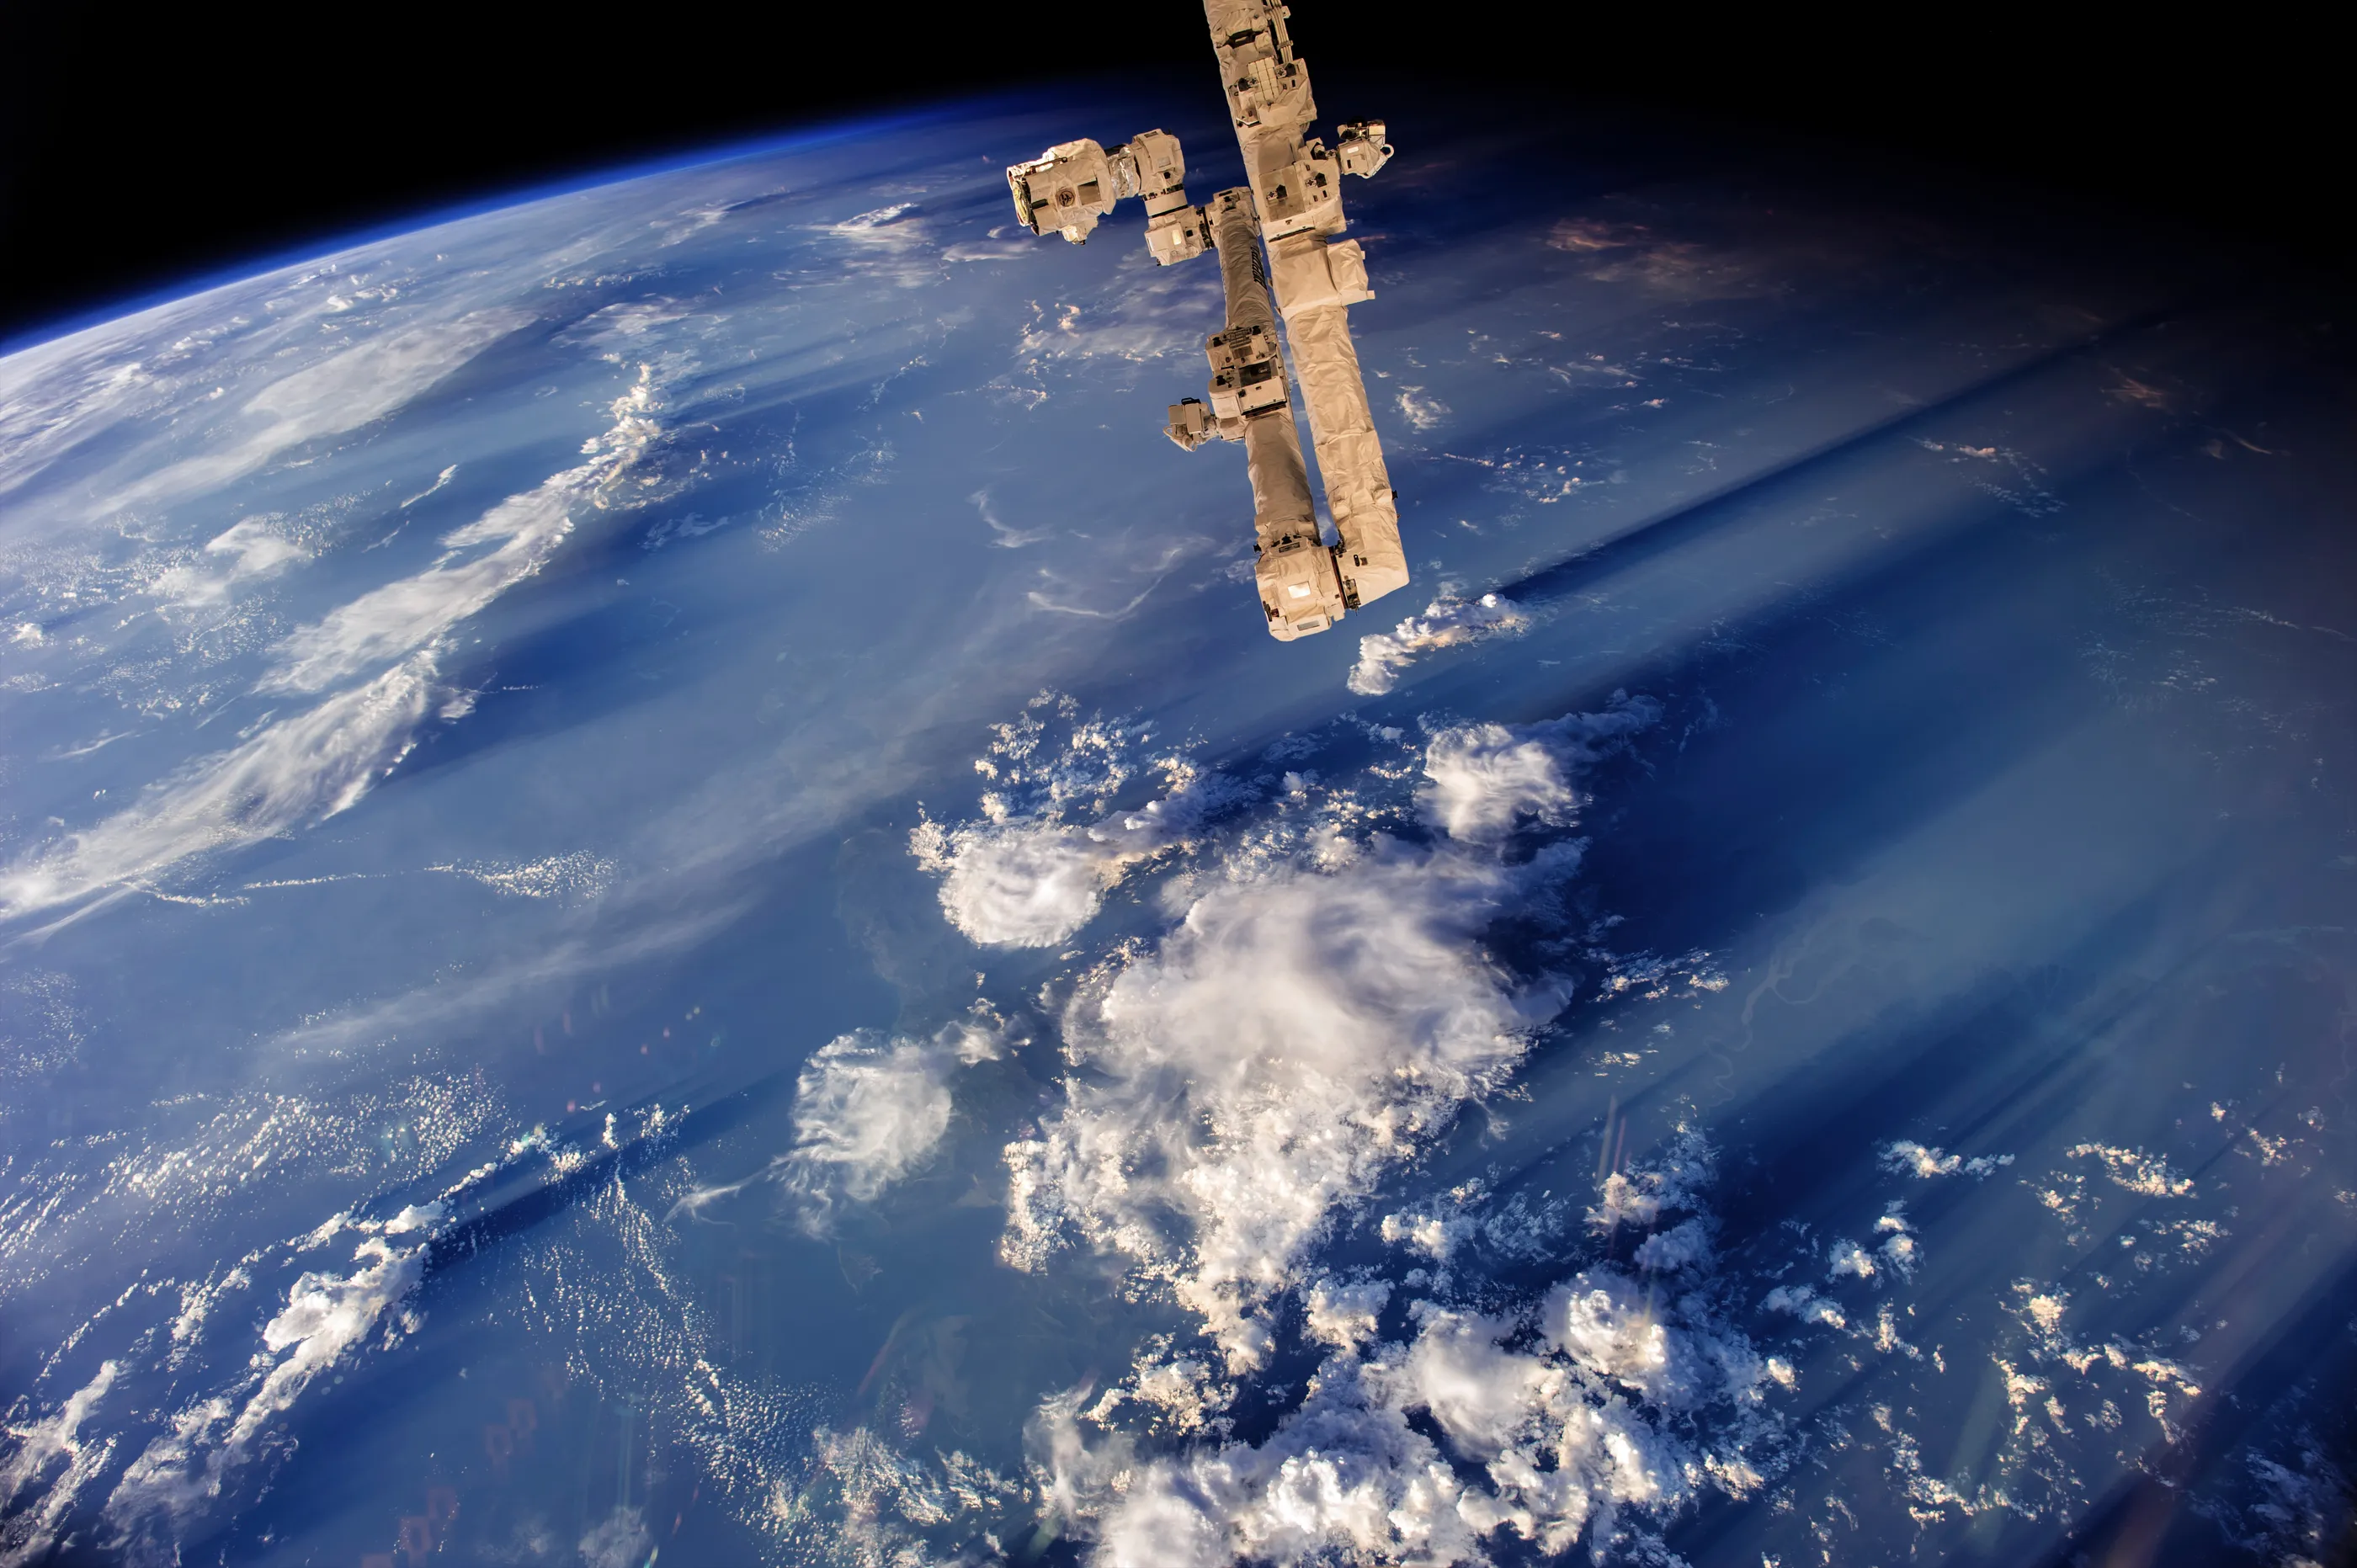 Обои реальном времени. О земле и космосе. Снимки из космоса. Снимки земли из космоса. Земля с орбиты.